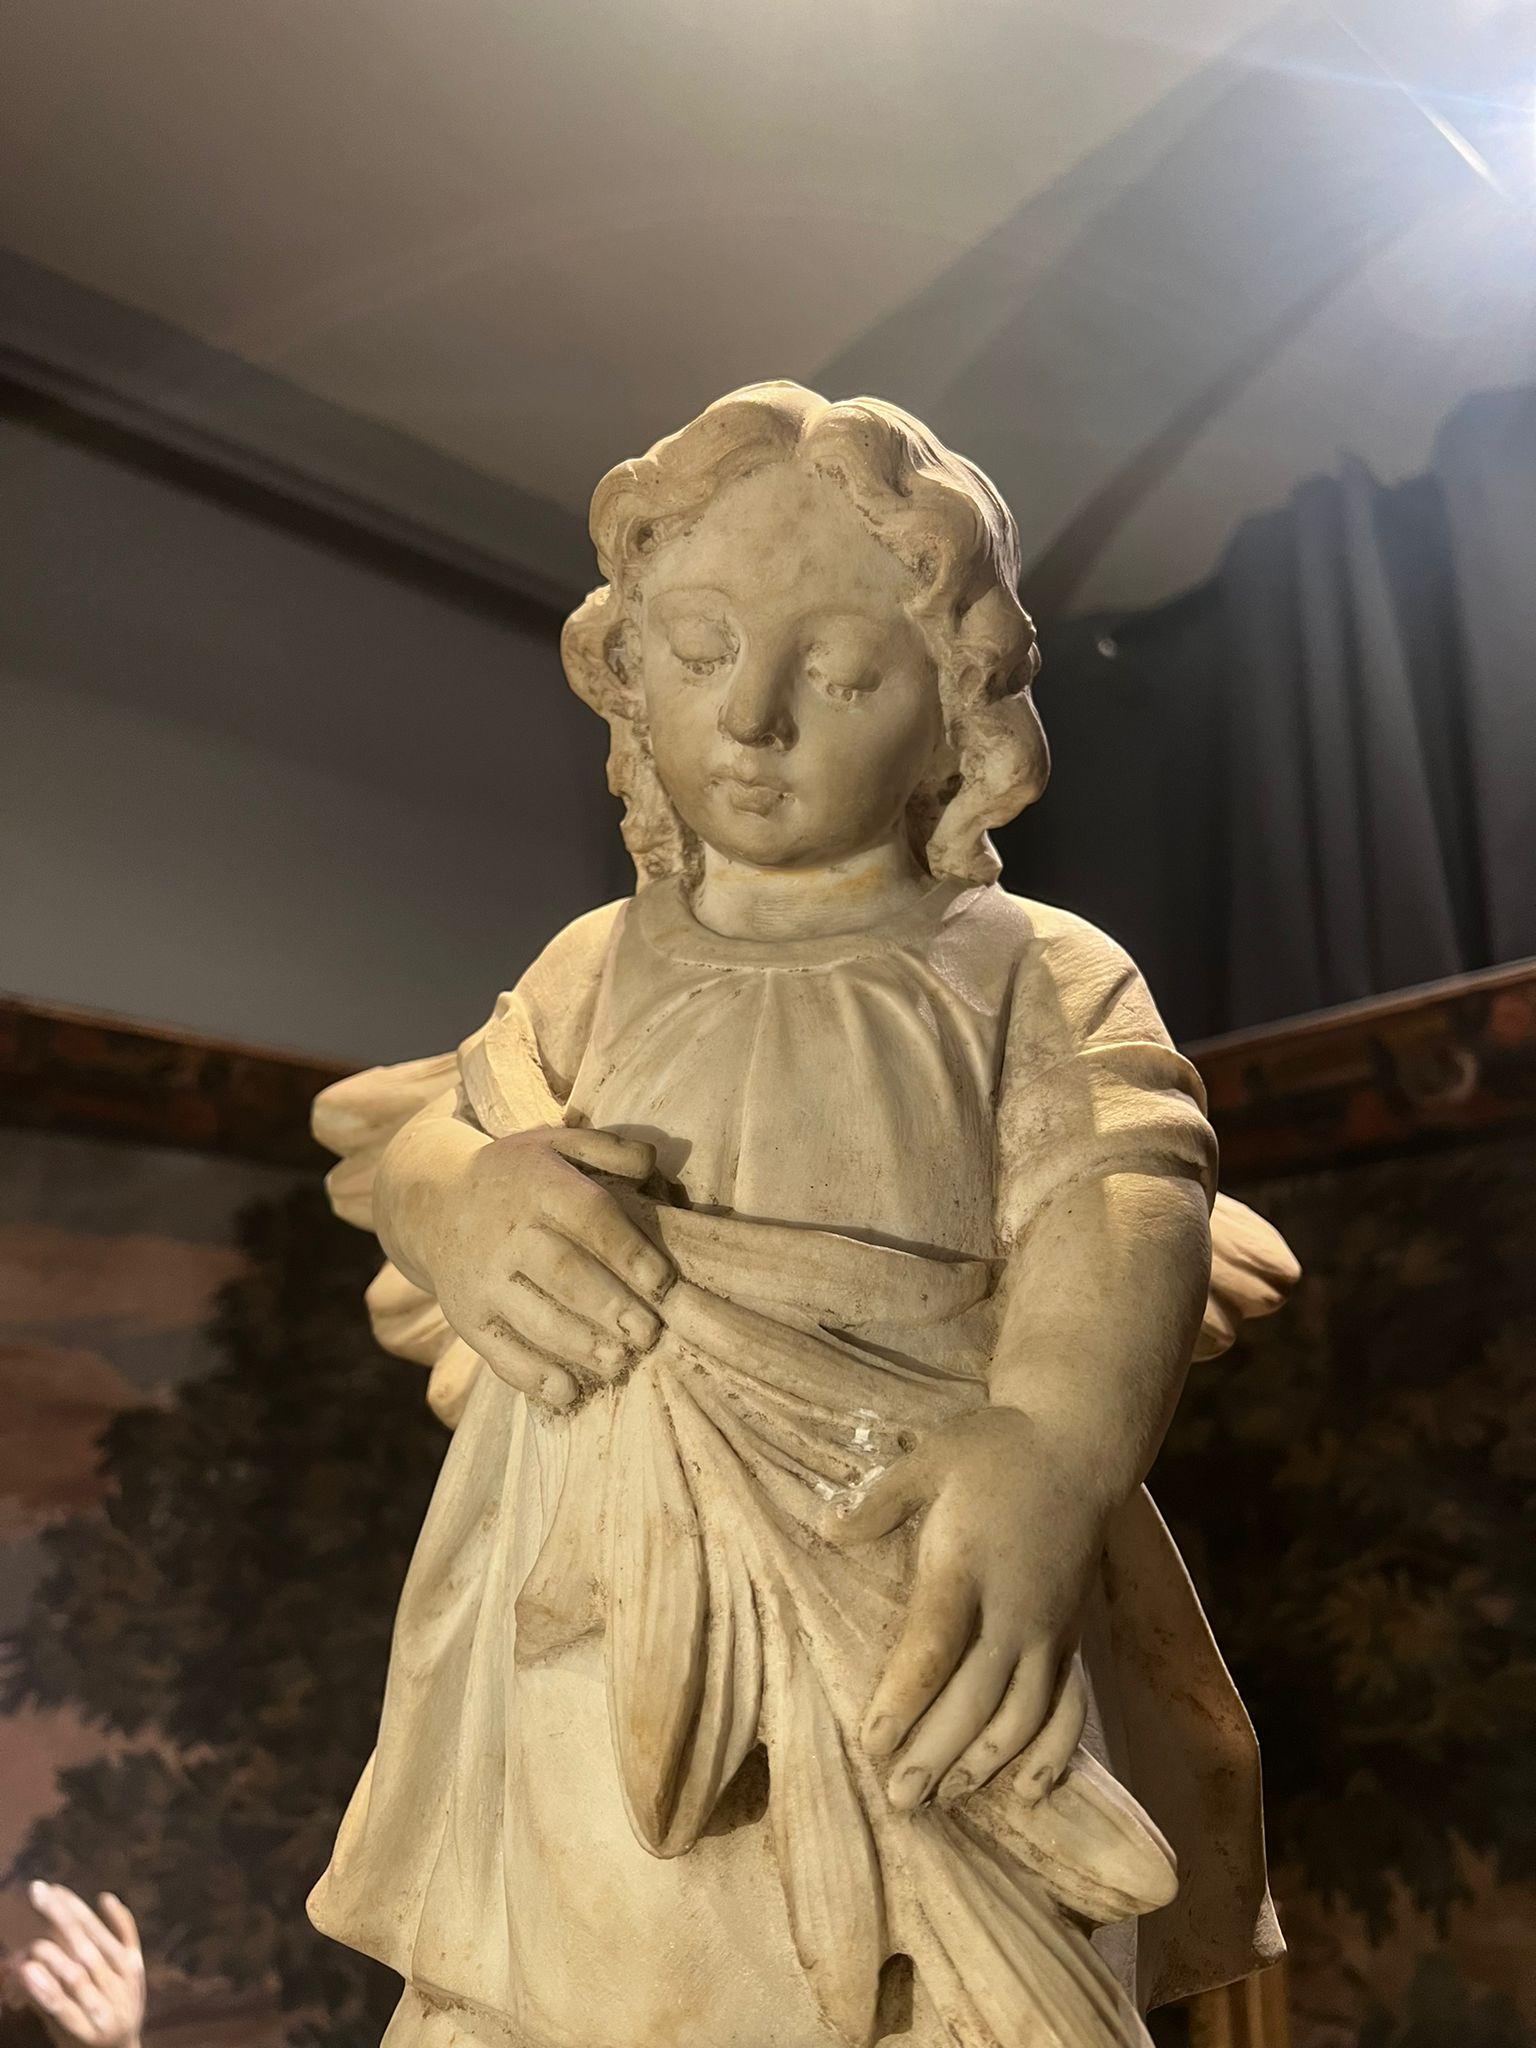 Gracieuse sculpture en marbre blanc de Carrare représentant un petit ange avec des ailes. Toscane, XIXe siècle.

Dimensions : 16x27x53 cm